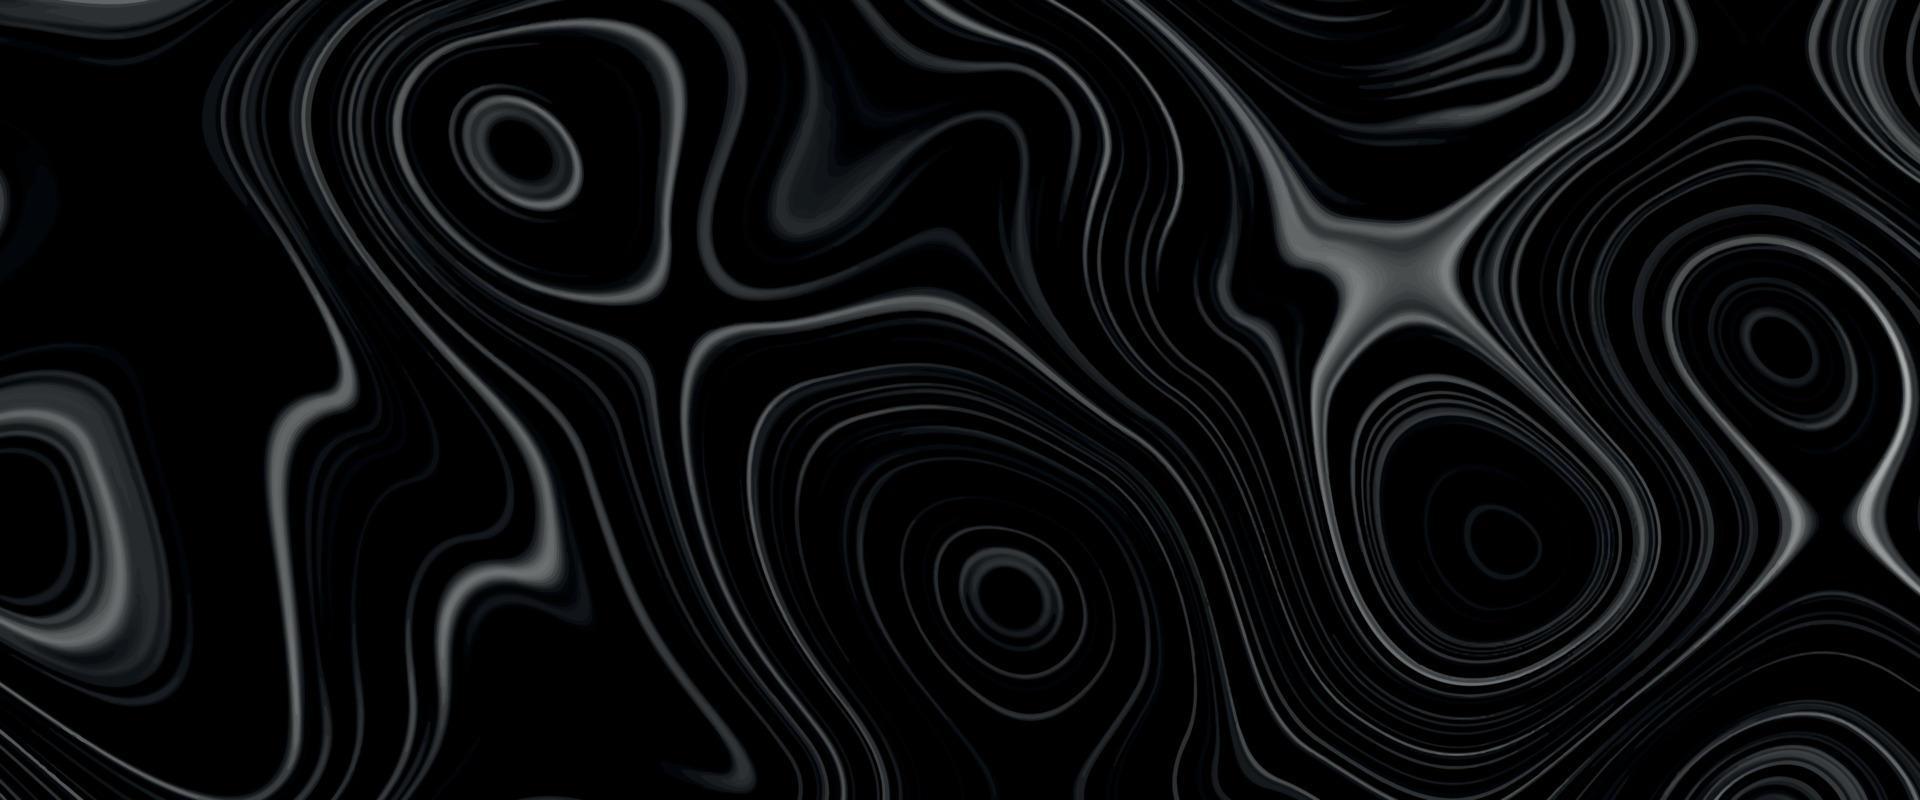 abstrakte flüssige kurvenlinie in grau silber schwarz metallic. glänzendes Muster coole Hintergrundtexturen. schöne Zeichnung mit den Scheidungen und Wellenlinien in Grautönen. schöne Marmorierung. vektor